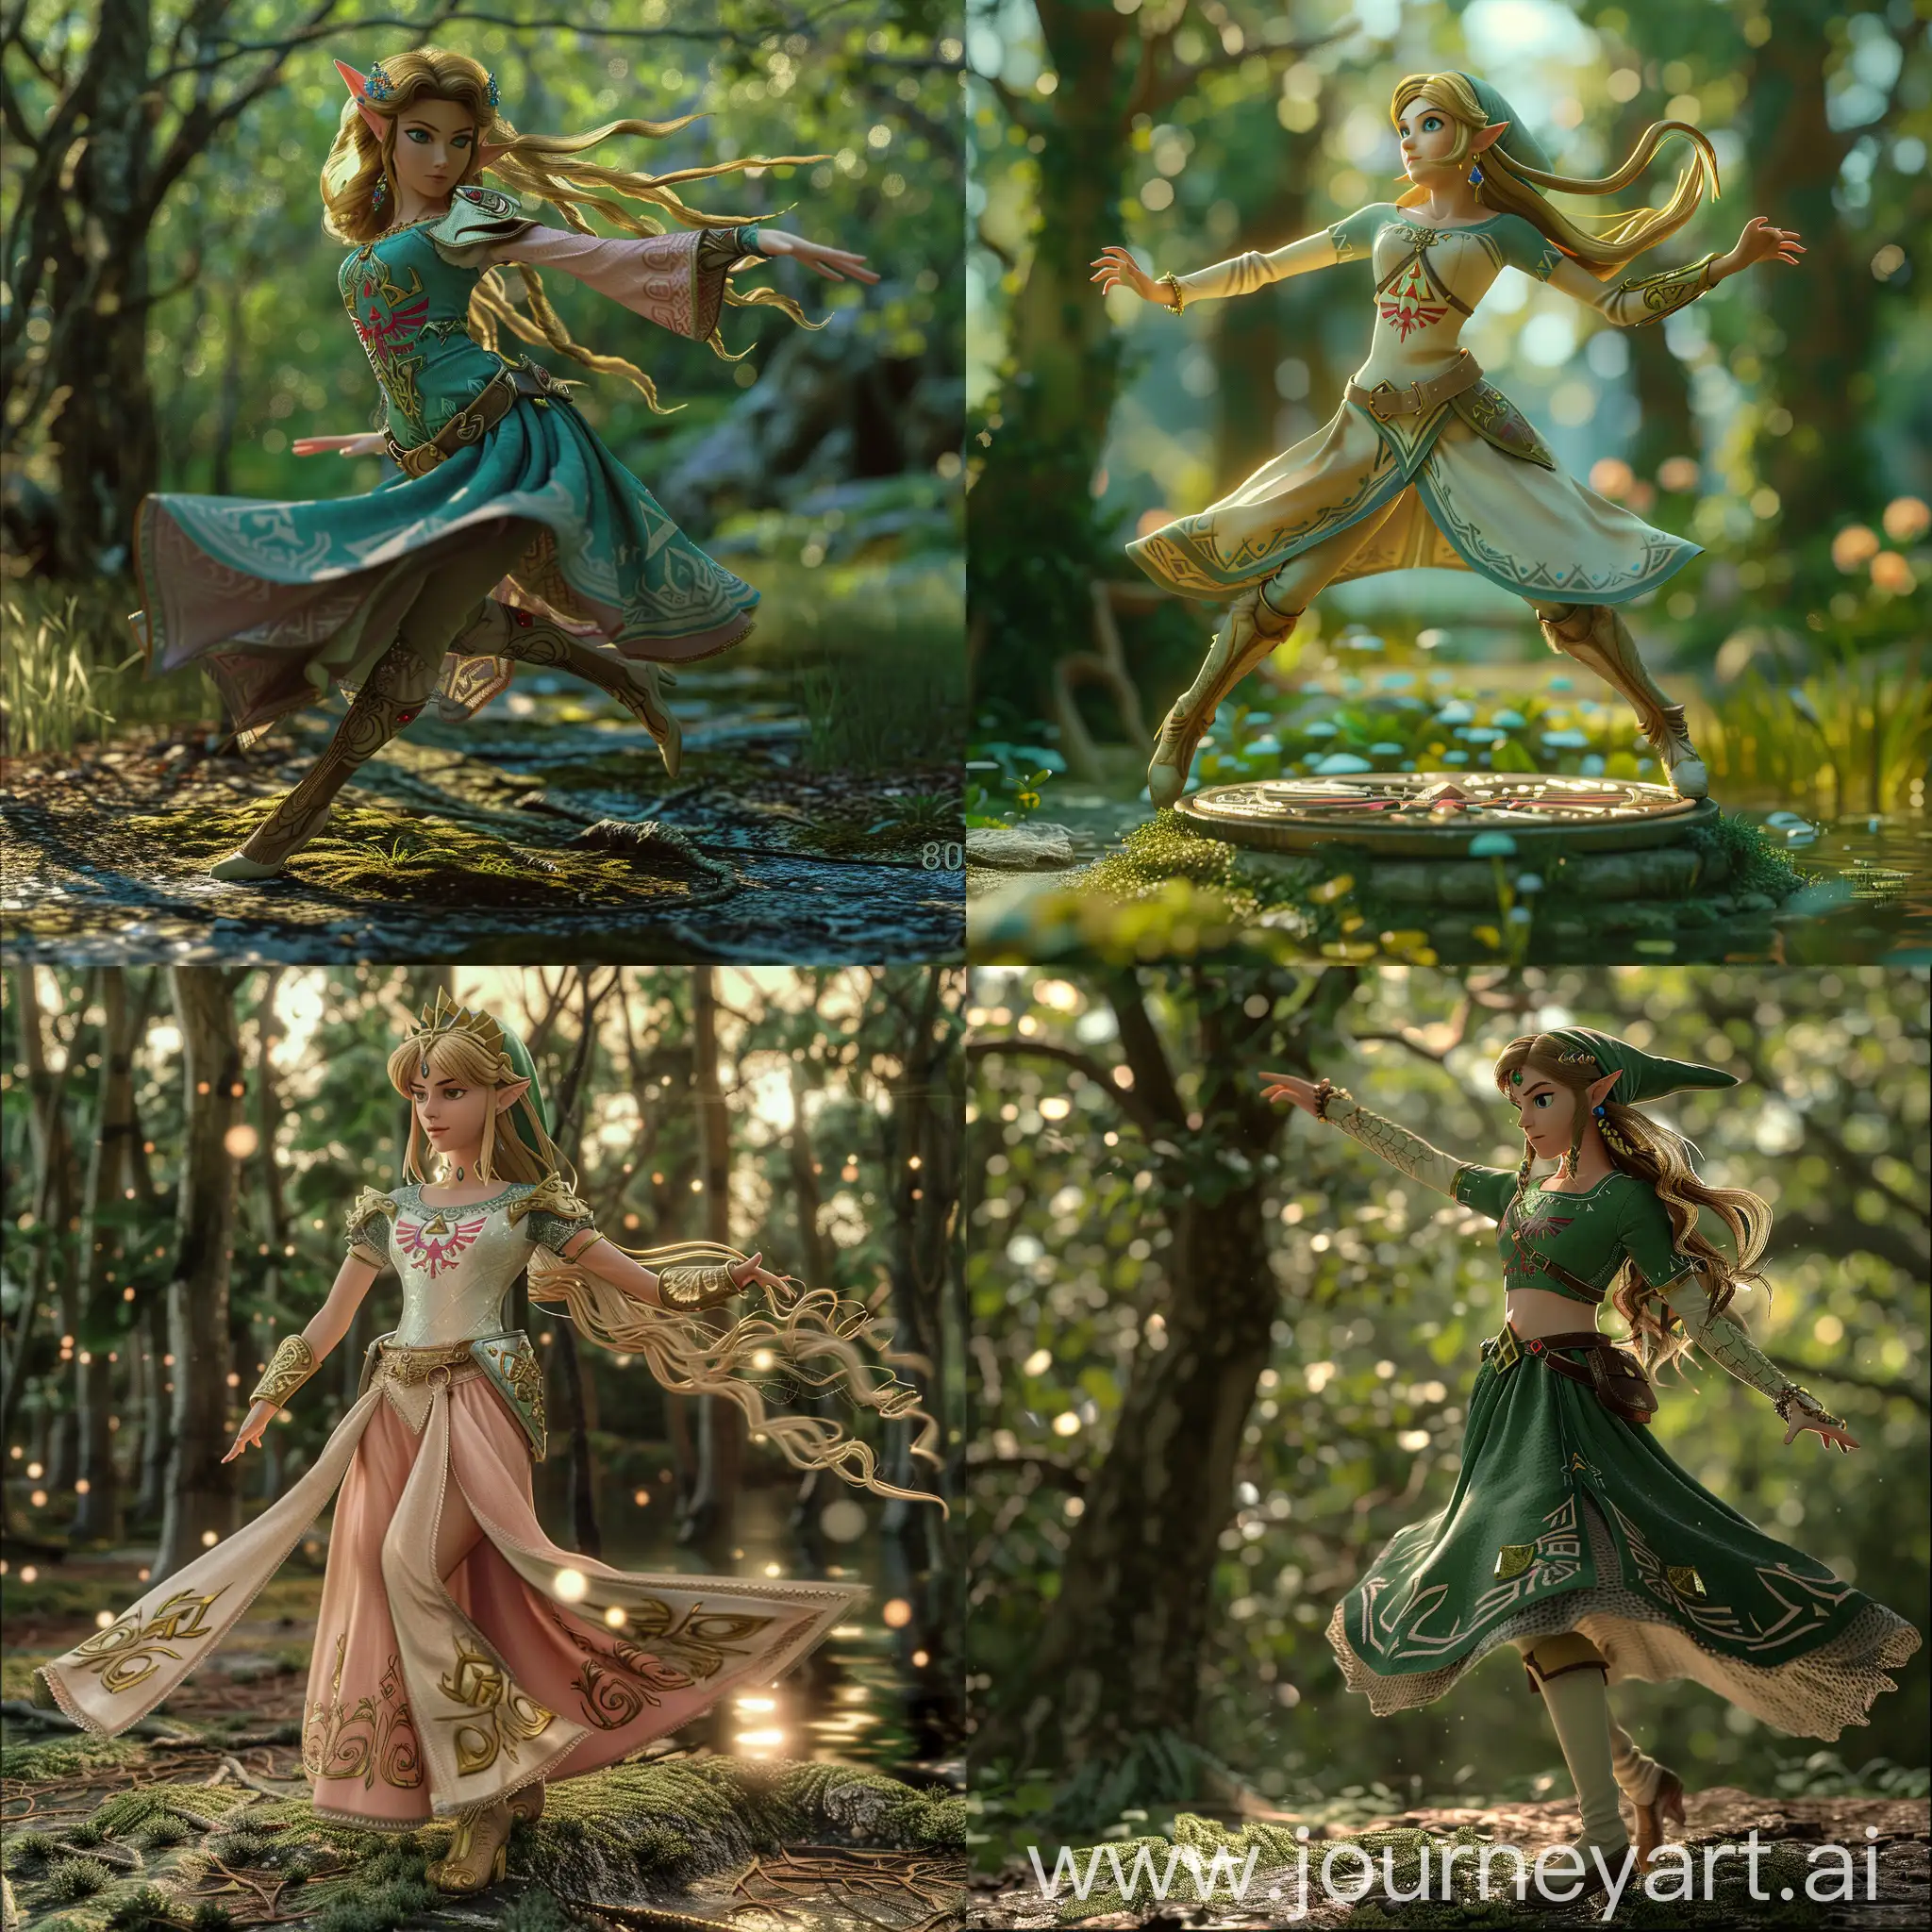 Princess Zelda, dancing on a forest, sfm, Unreal Engine, source filmaker, detailed,8k, twilight Princess, cinematic, game still, portrait